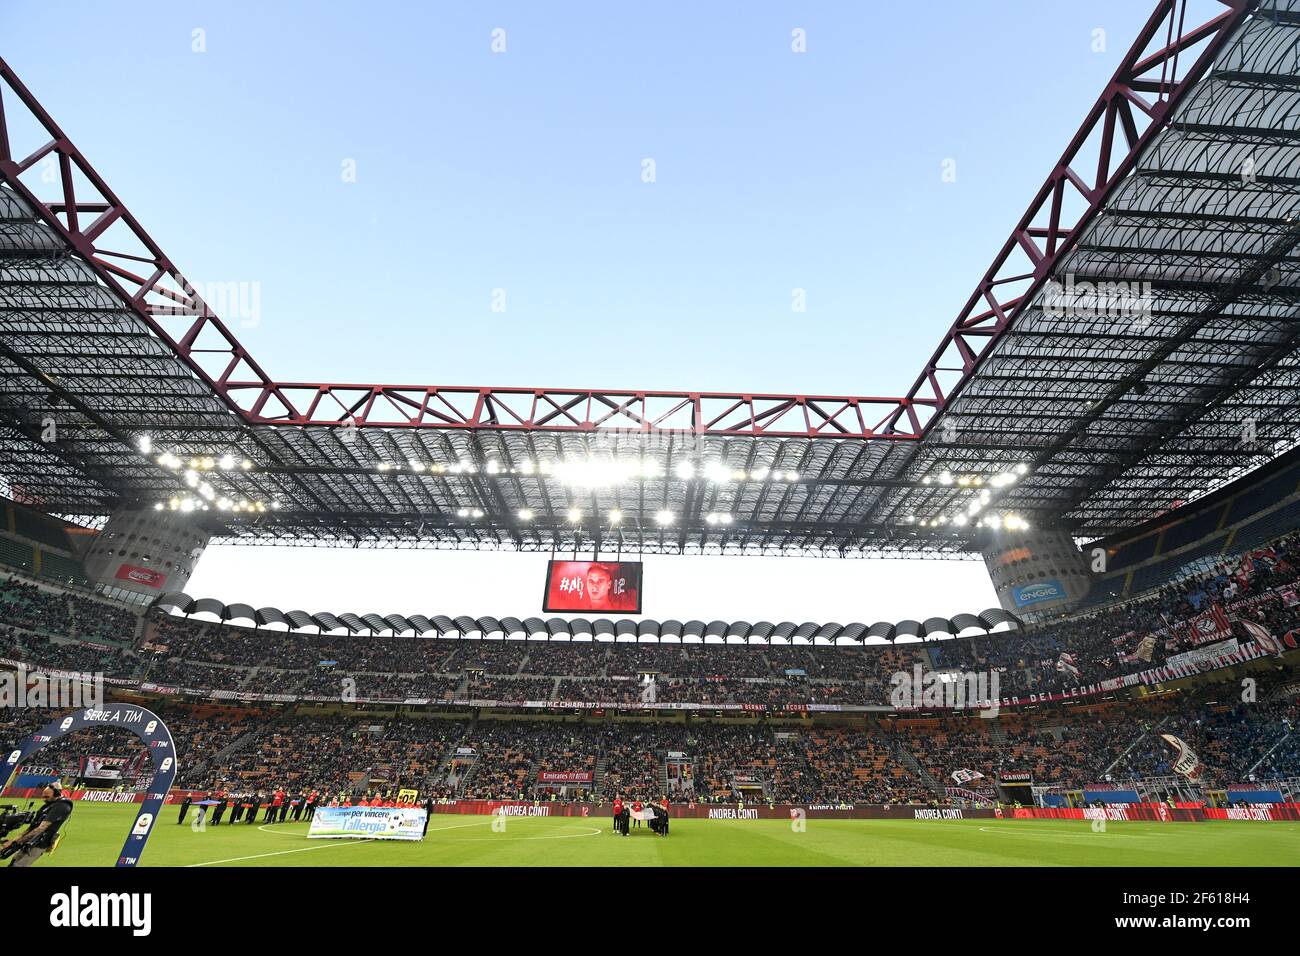 Fußball-Fans sitzen beobachten ein Fußballspiel im san siro Stadion, während der italienischen Serie A, in Mailand, Italien. Stockfoto